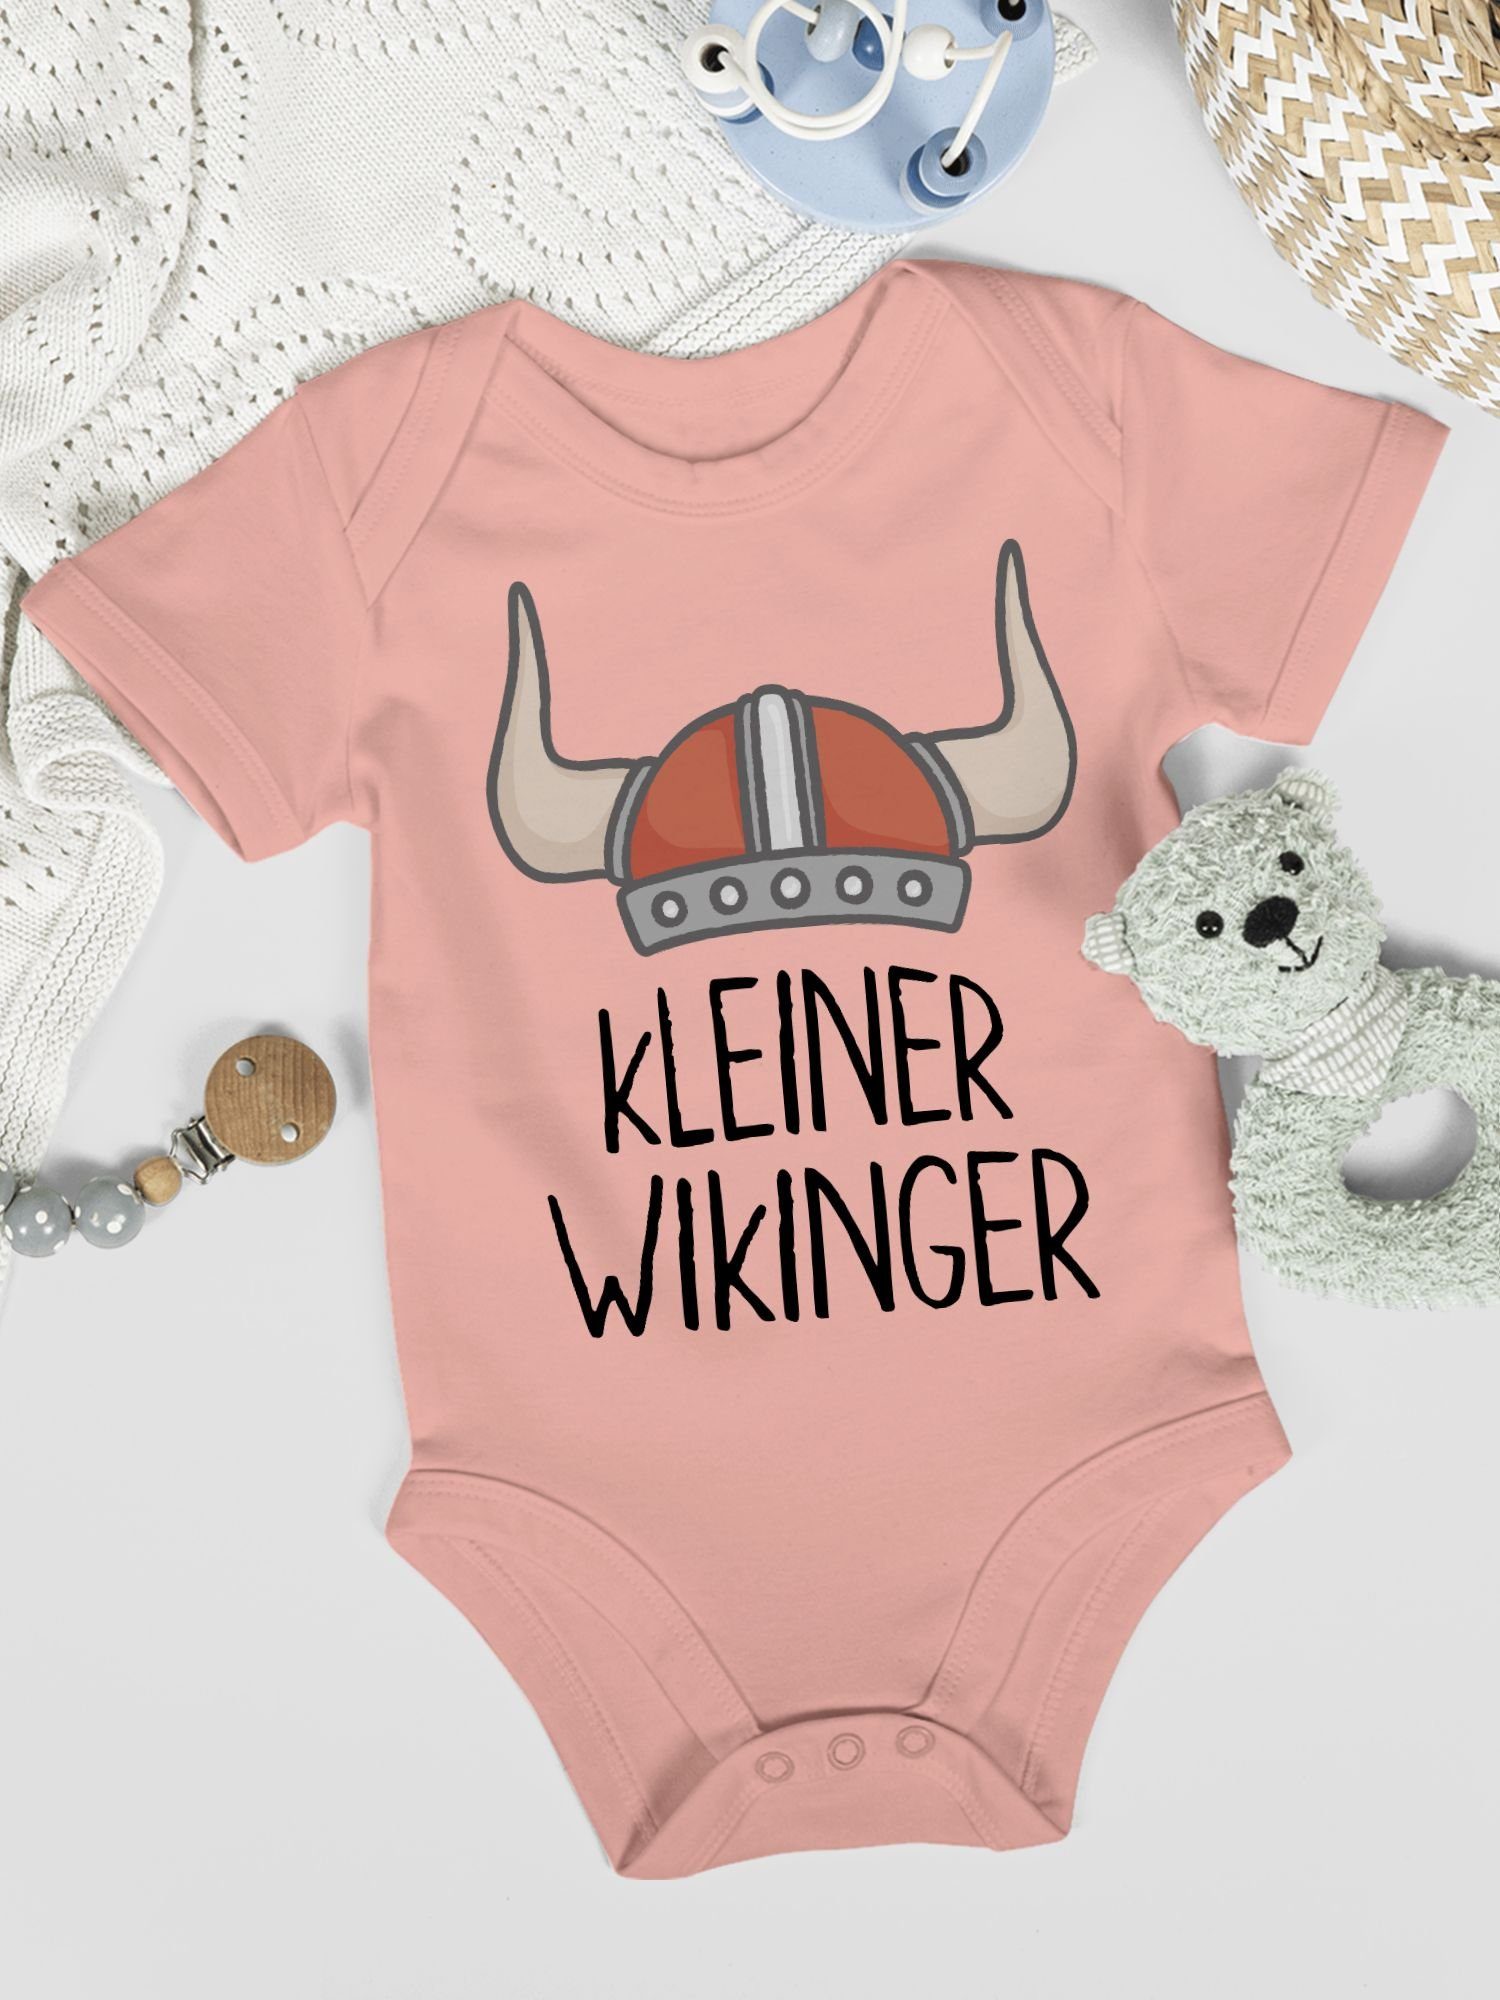 Shirtbody 2 Wikinger & Wikinger Babyrosa kleiner Baby Shirtracer Walhalla